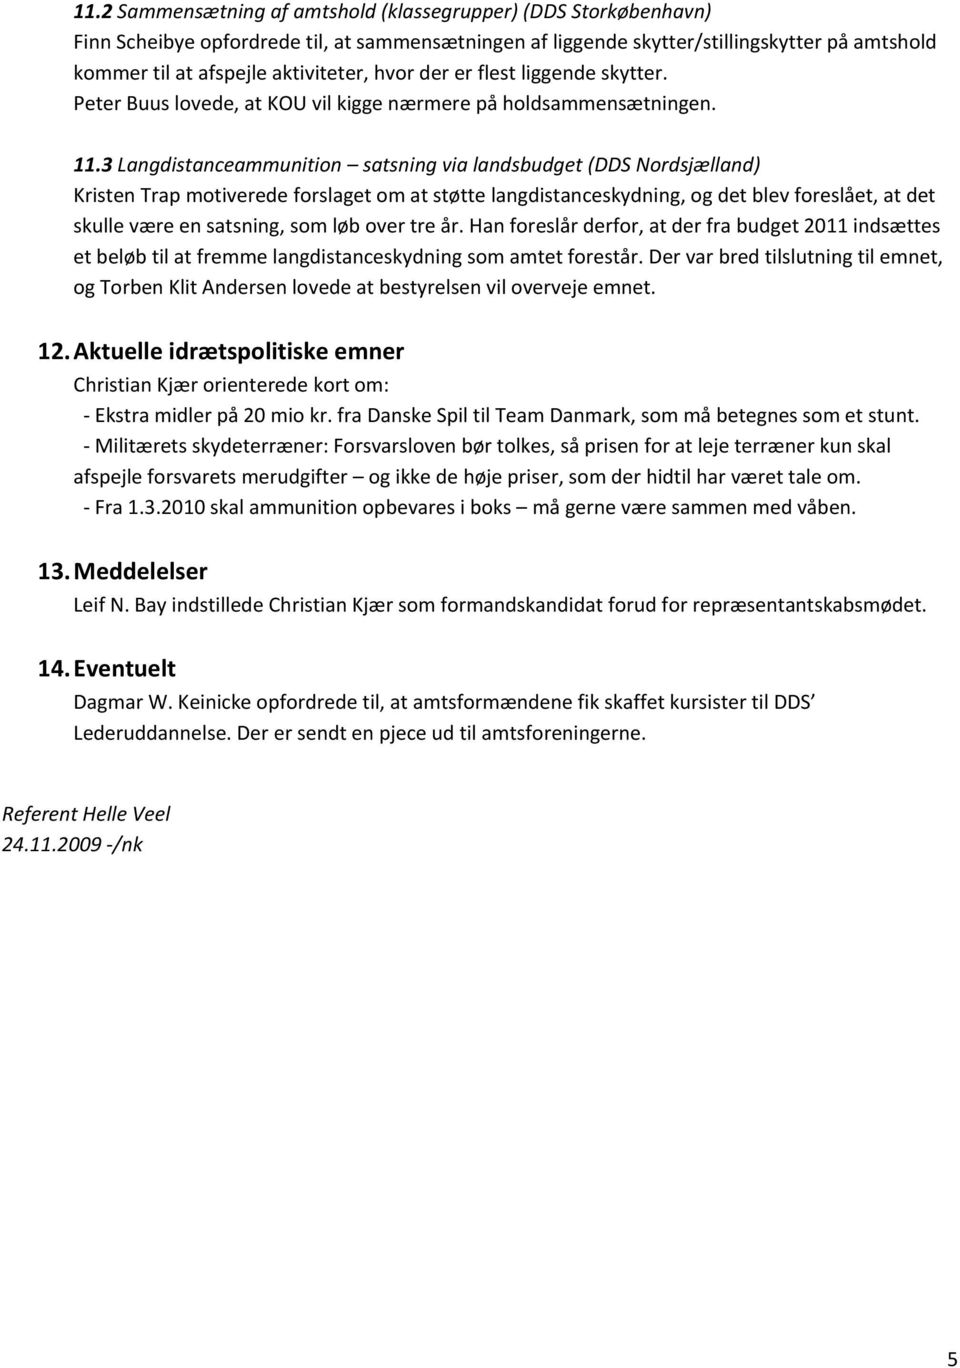 3 Langdistanceammunition satsning via landsbudget (DDS Nordsjælland) Kristen Trap motiverede forslaget om at støtte langdistanceskydning, og det blev foreslået, at det skulle være en satsning, som